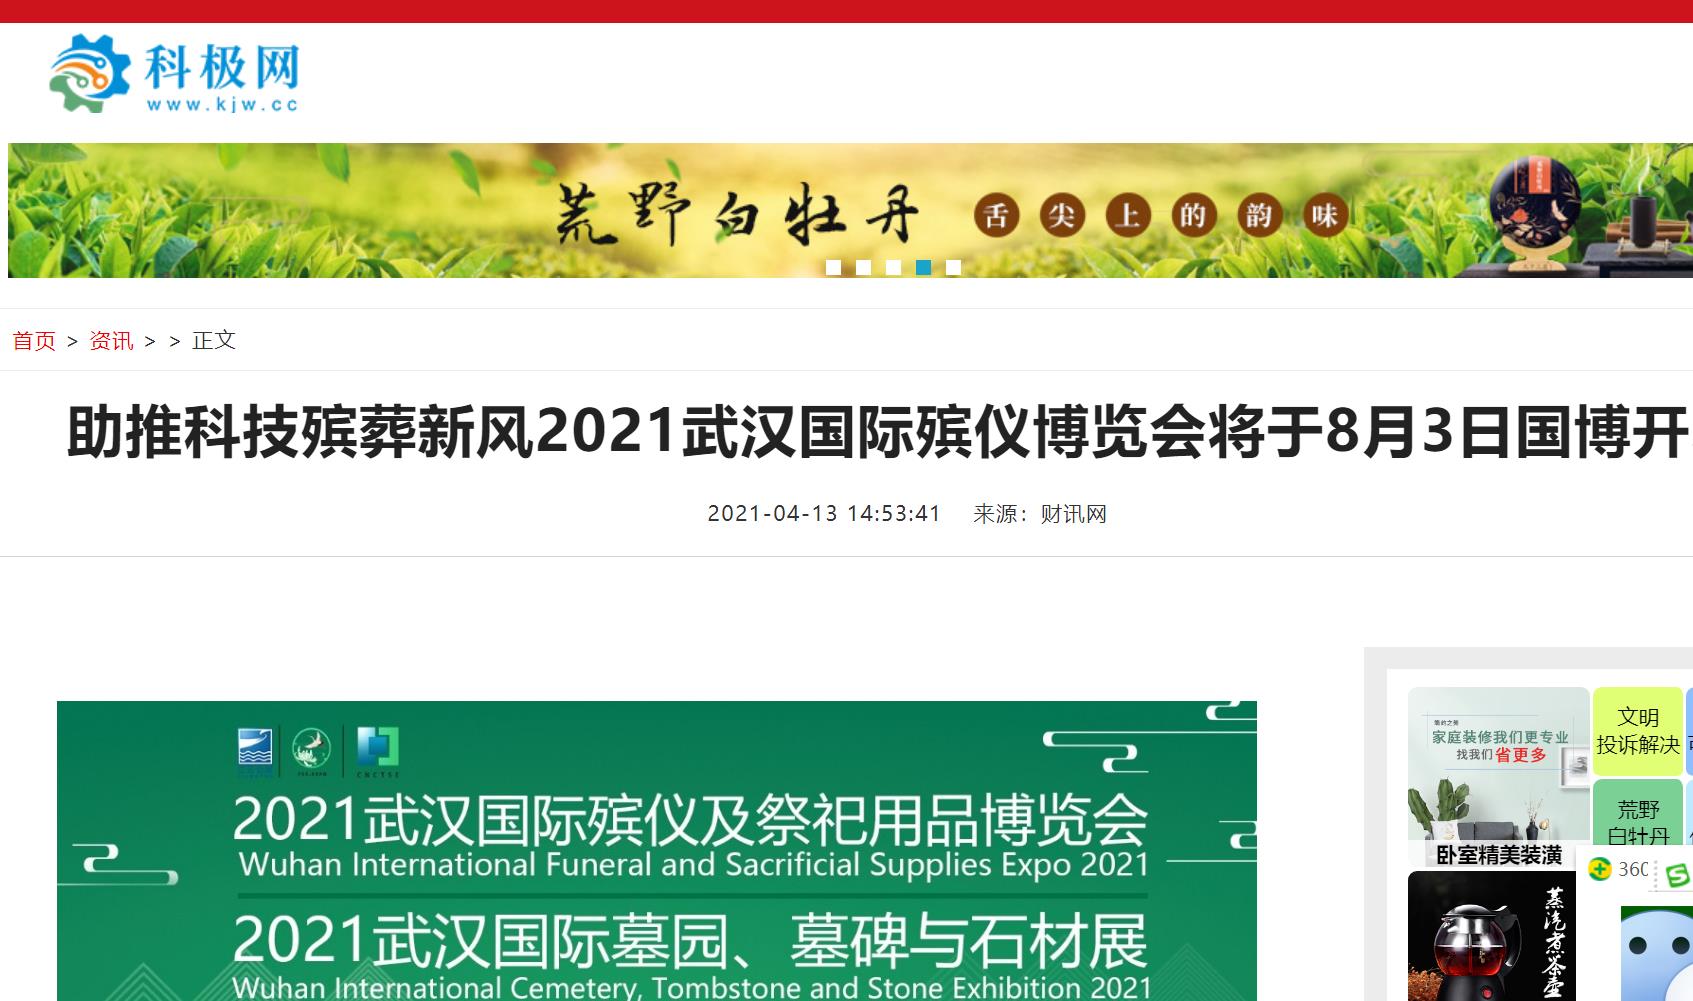 感谢科技界报道武汉国际殡仪博览会